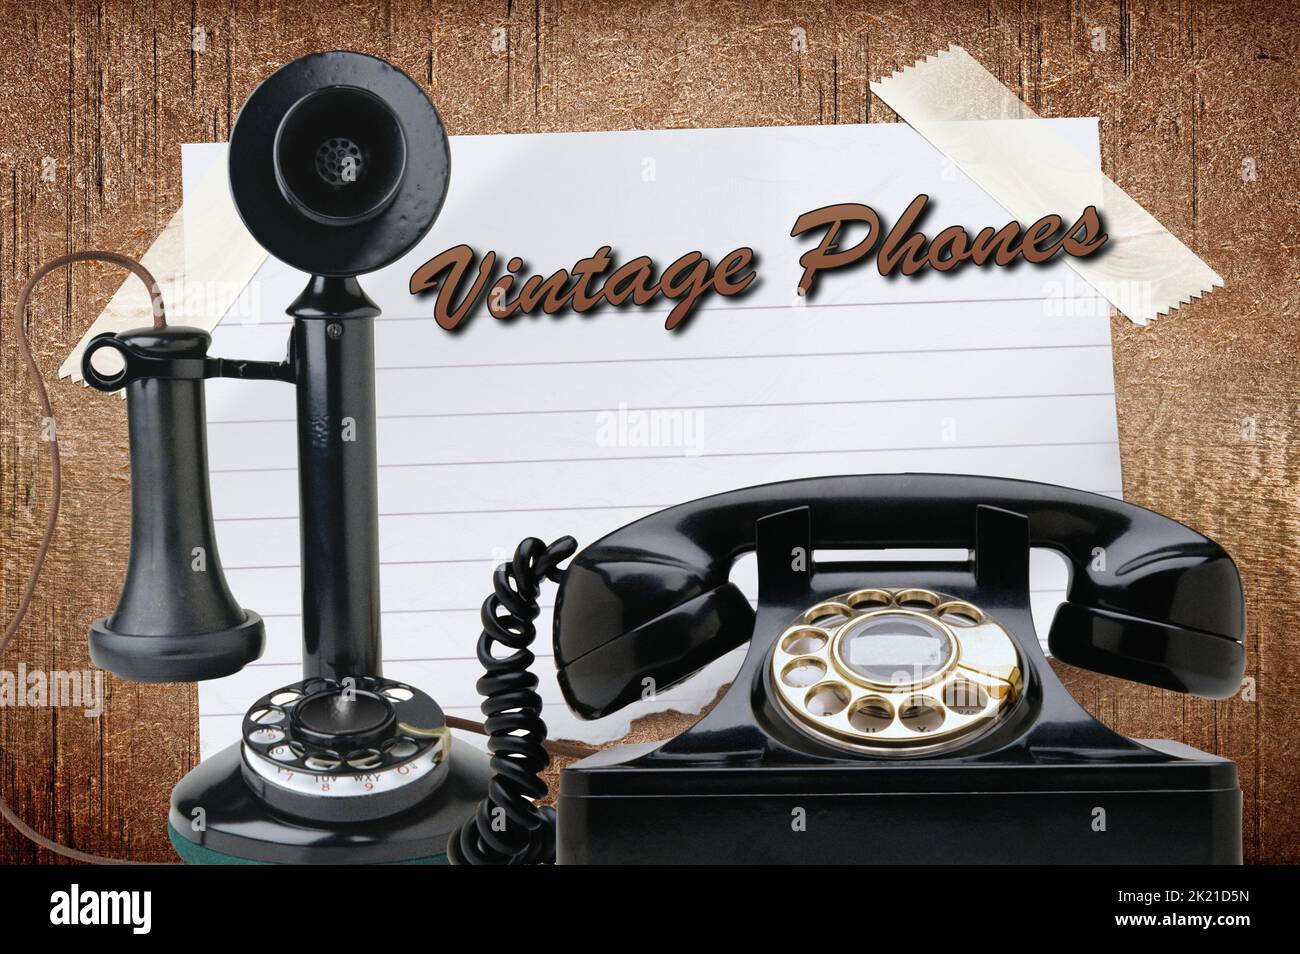 Vintage Phones Stock Photo